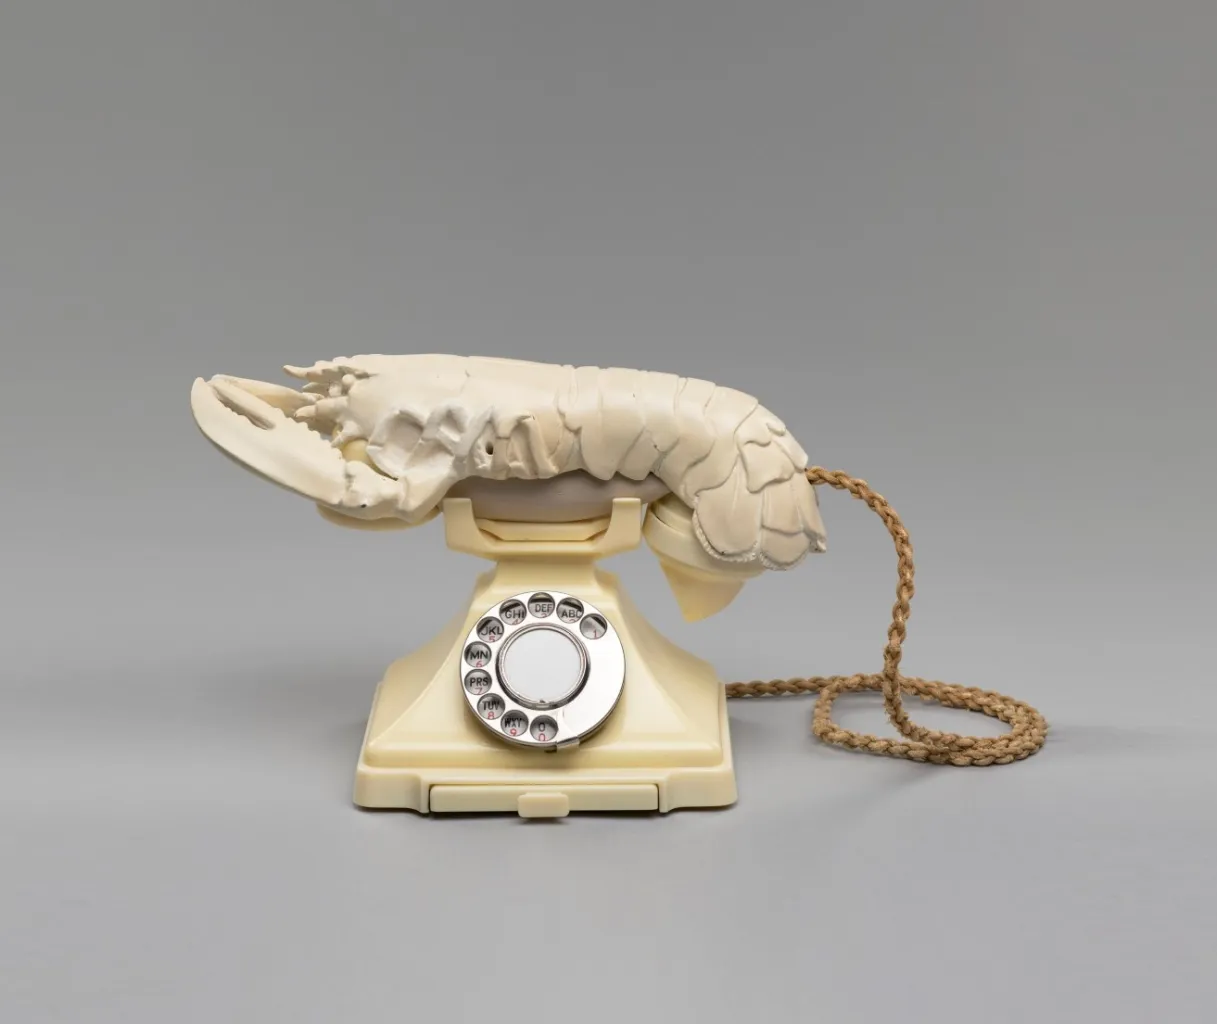 salvador dalí edward james, lobster telephone, 1938